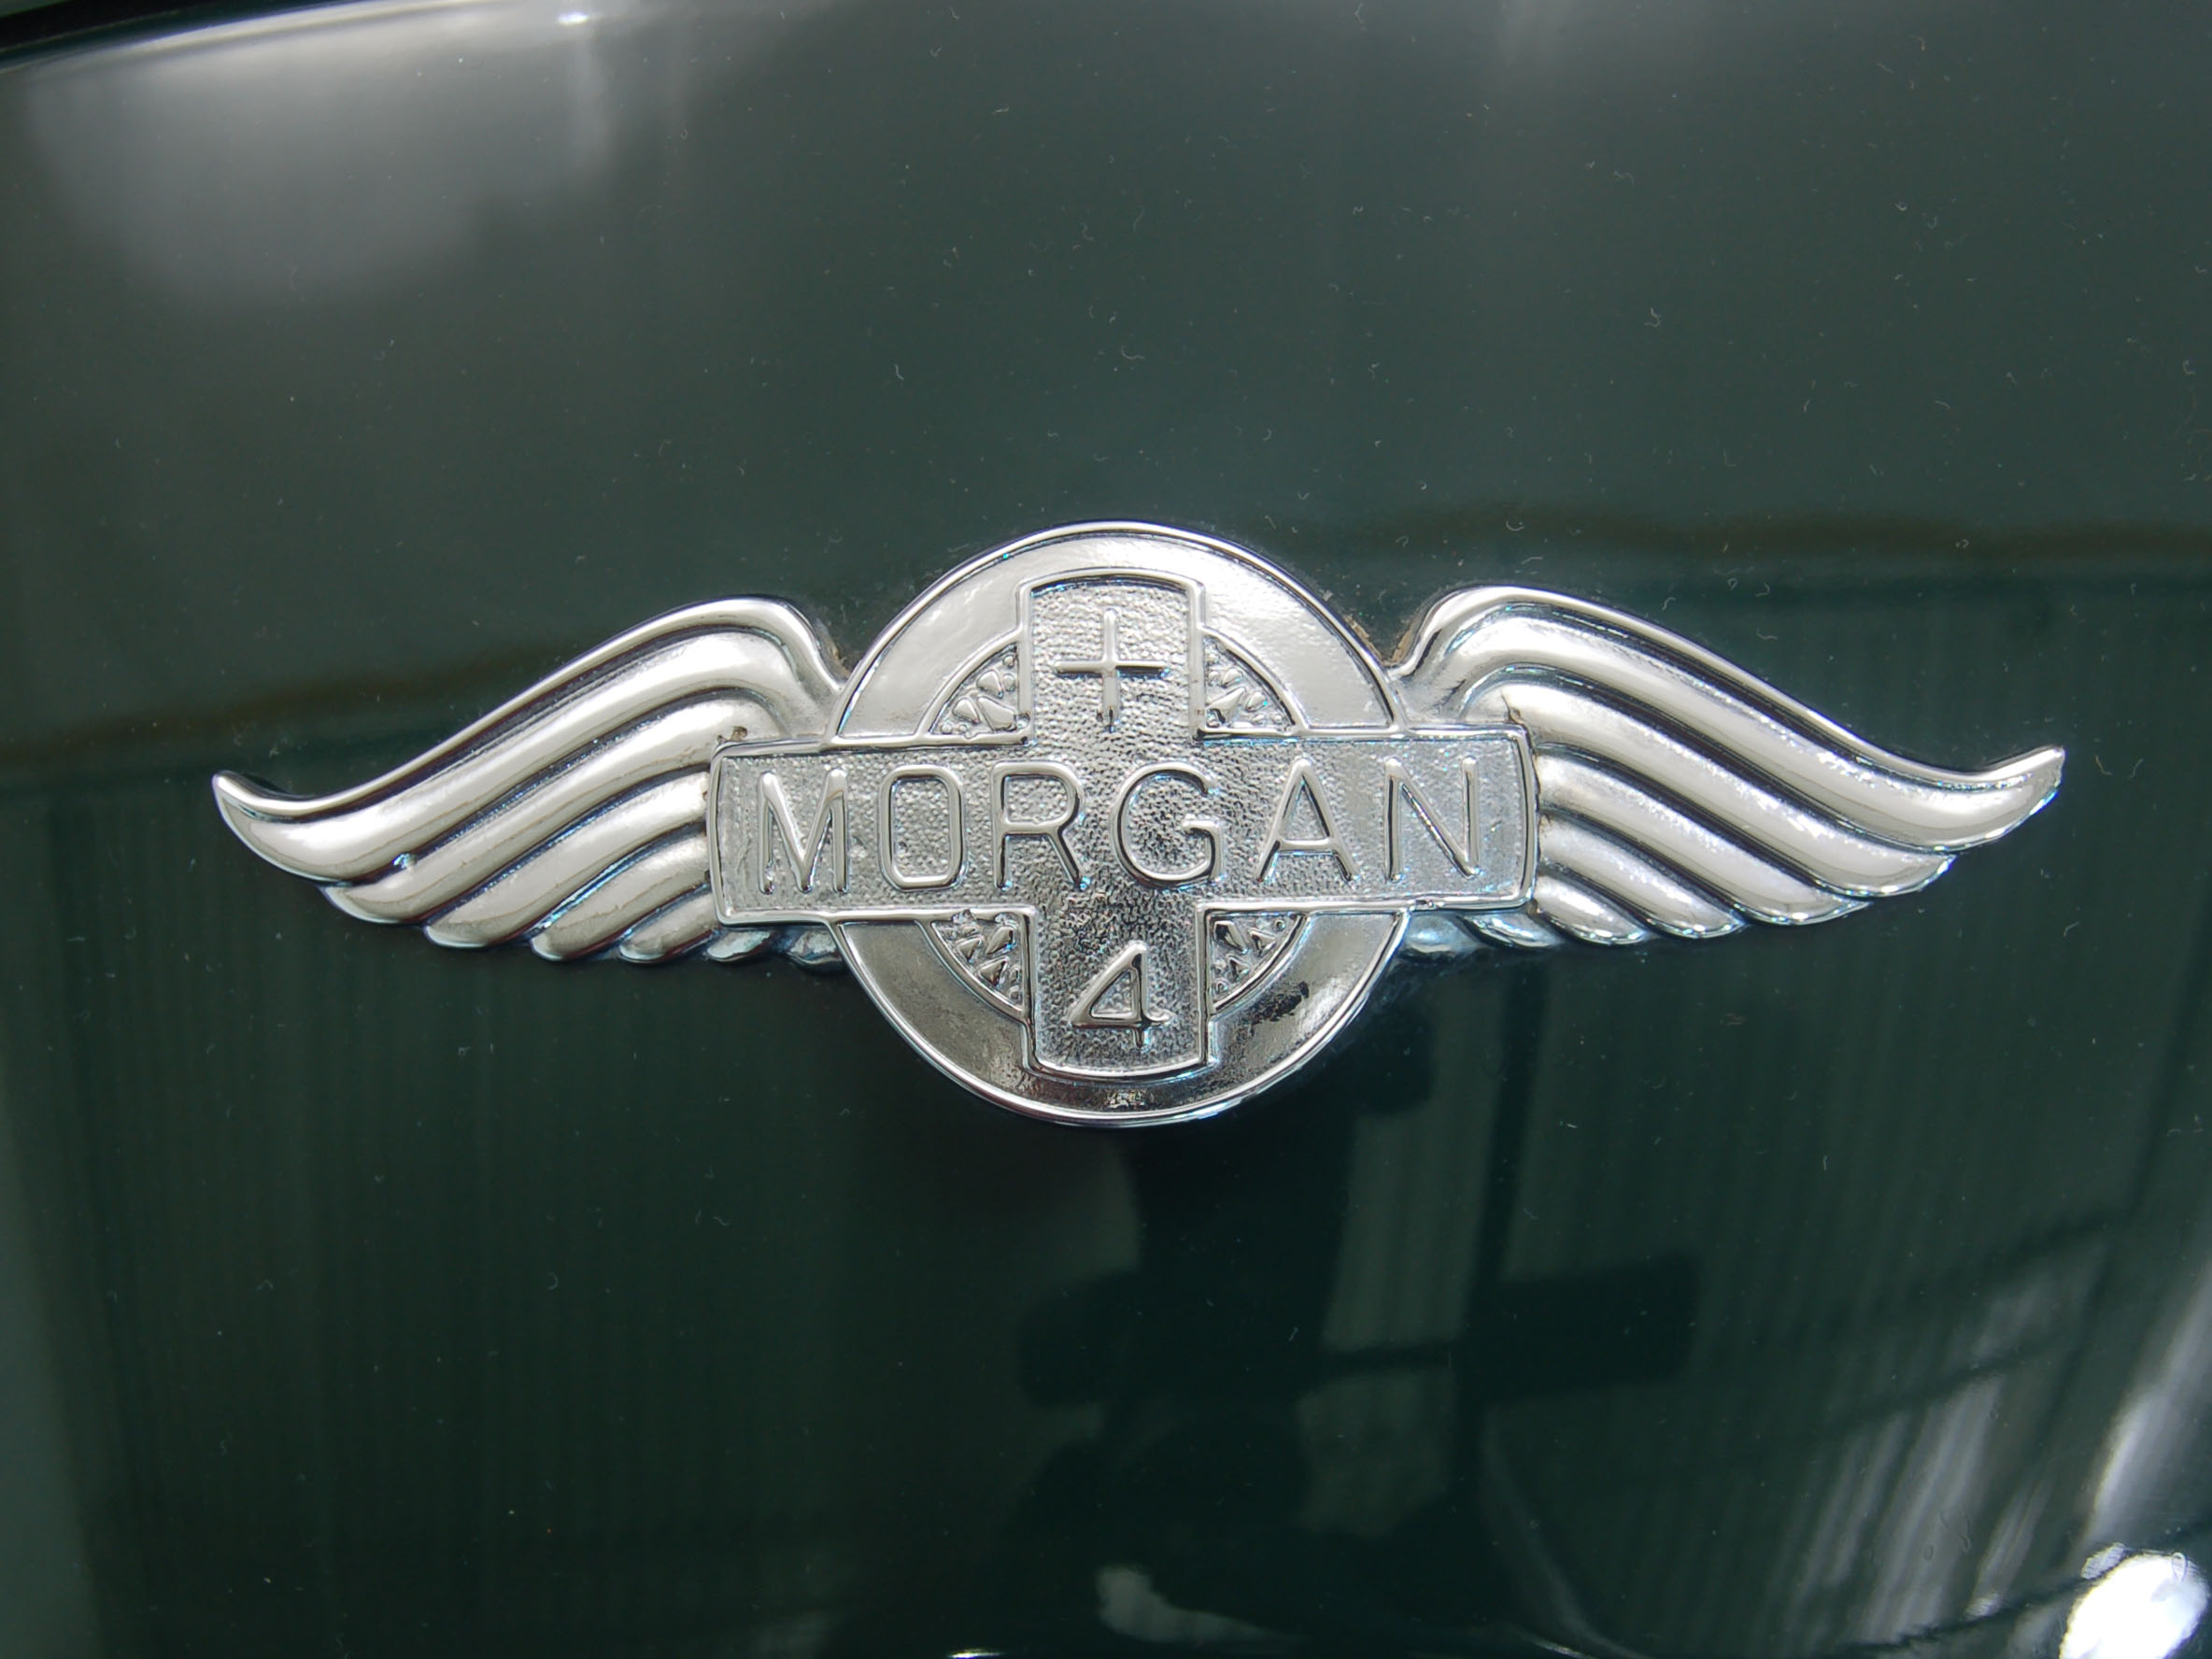 1952 Morgan Plus 4